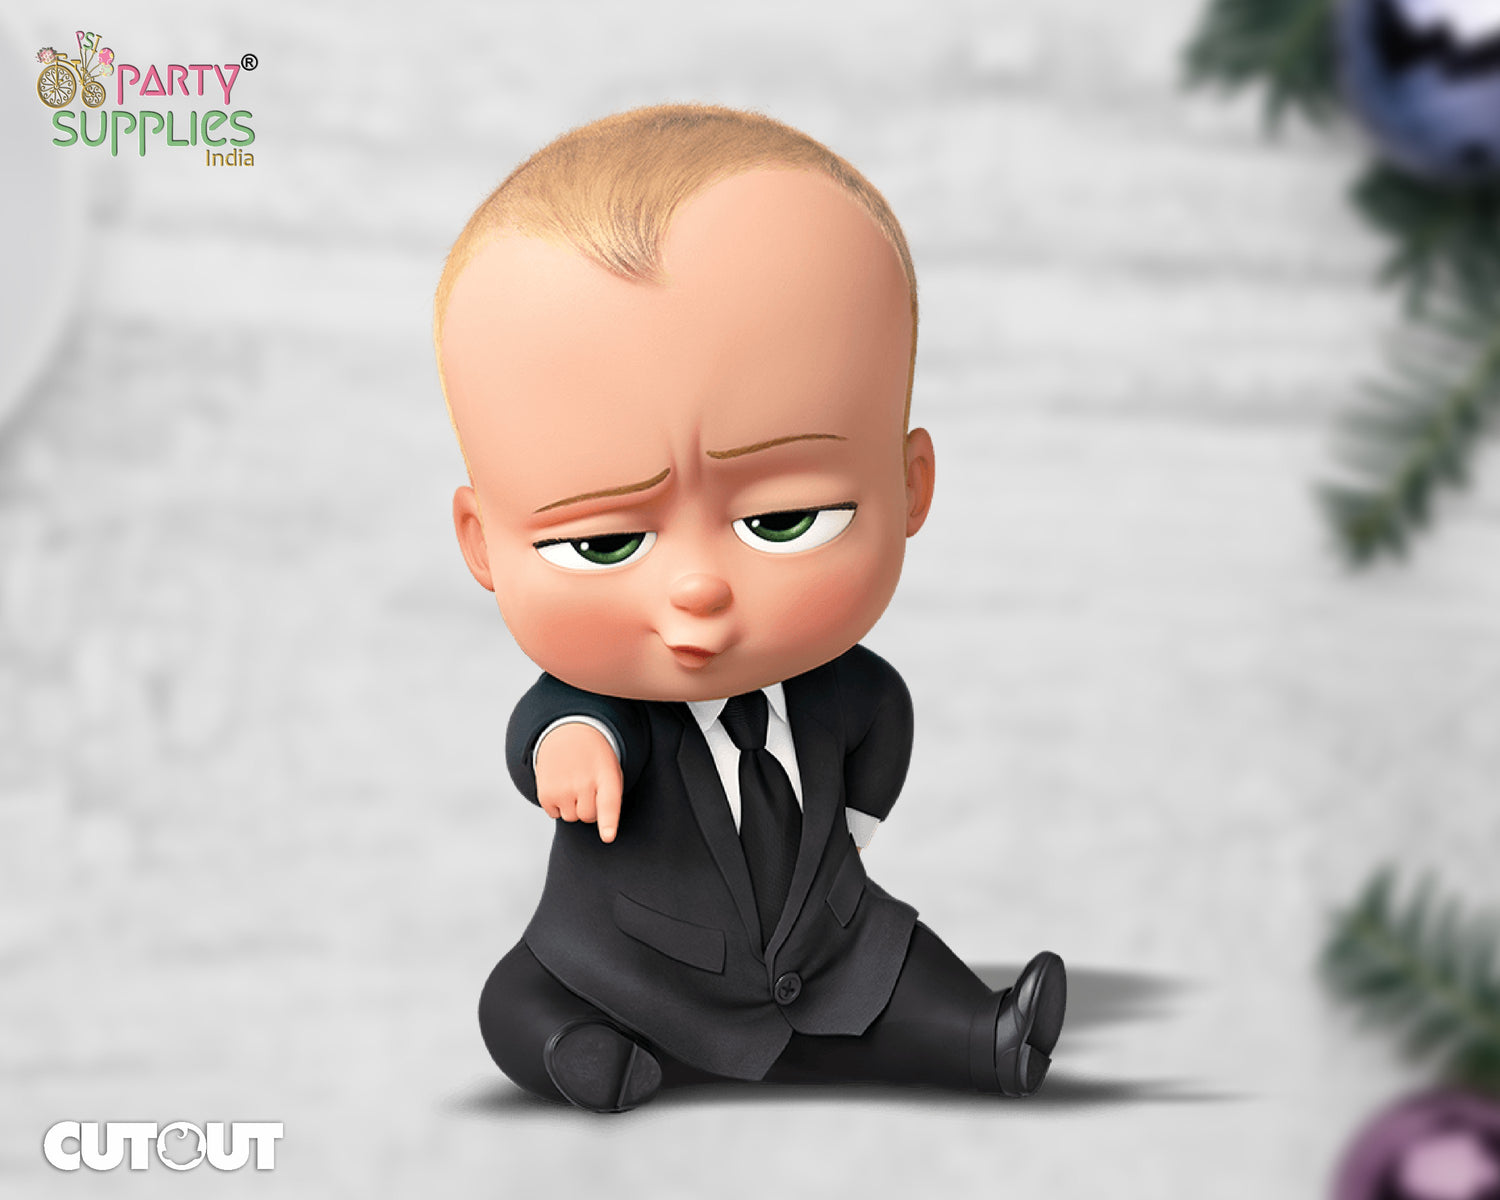 PSI Boss Baby Theme Cutout - 05